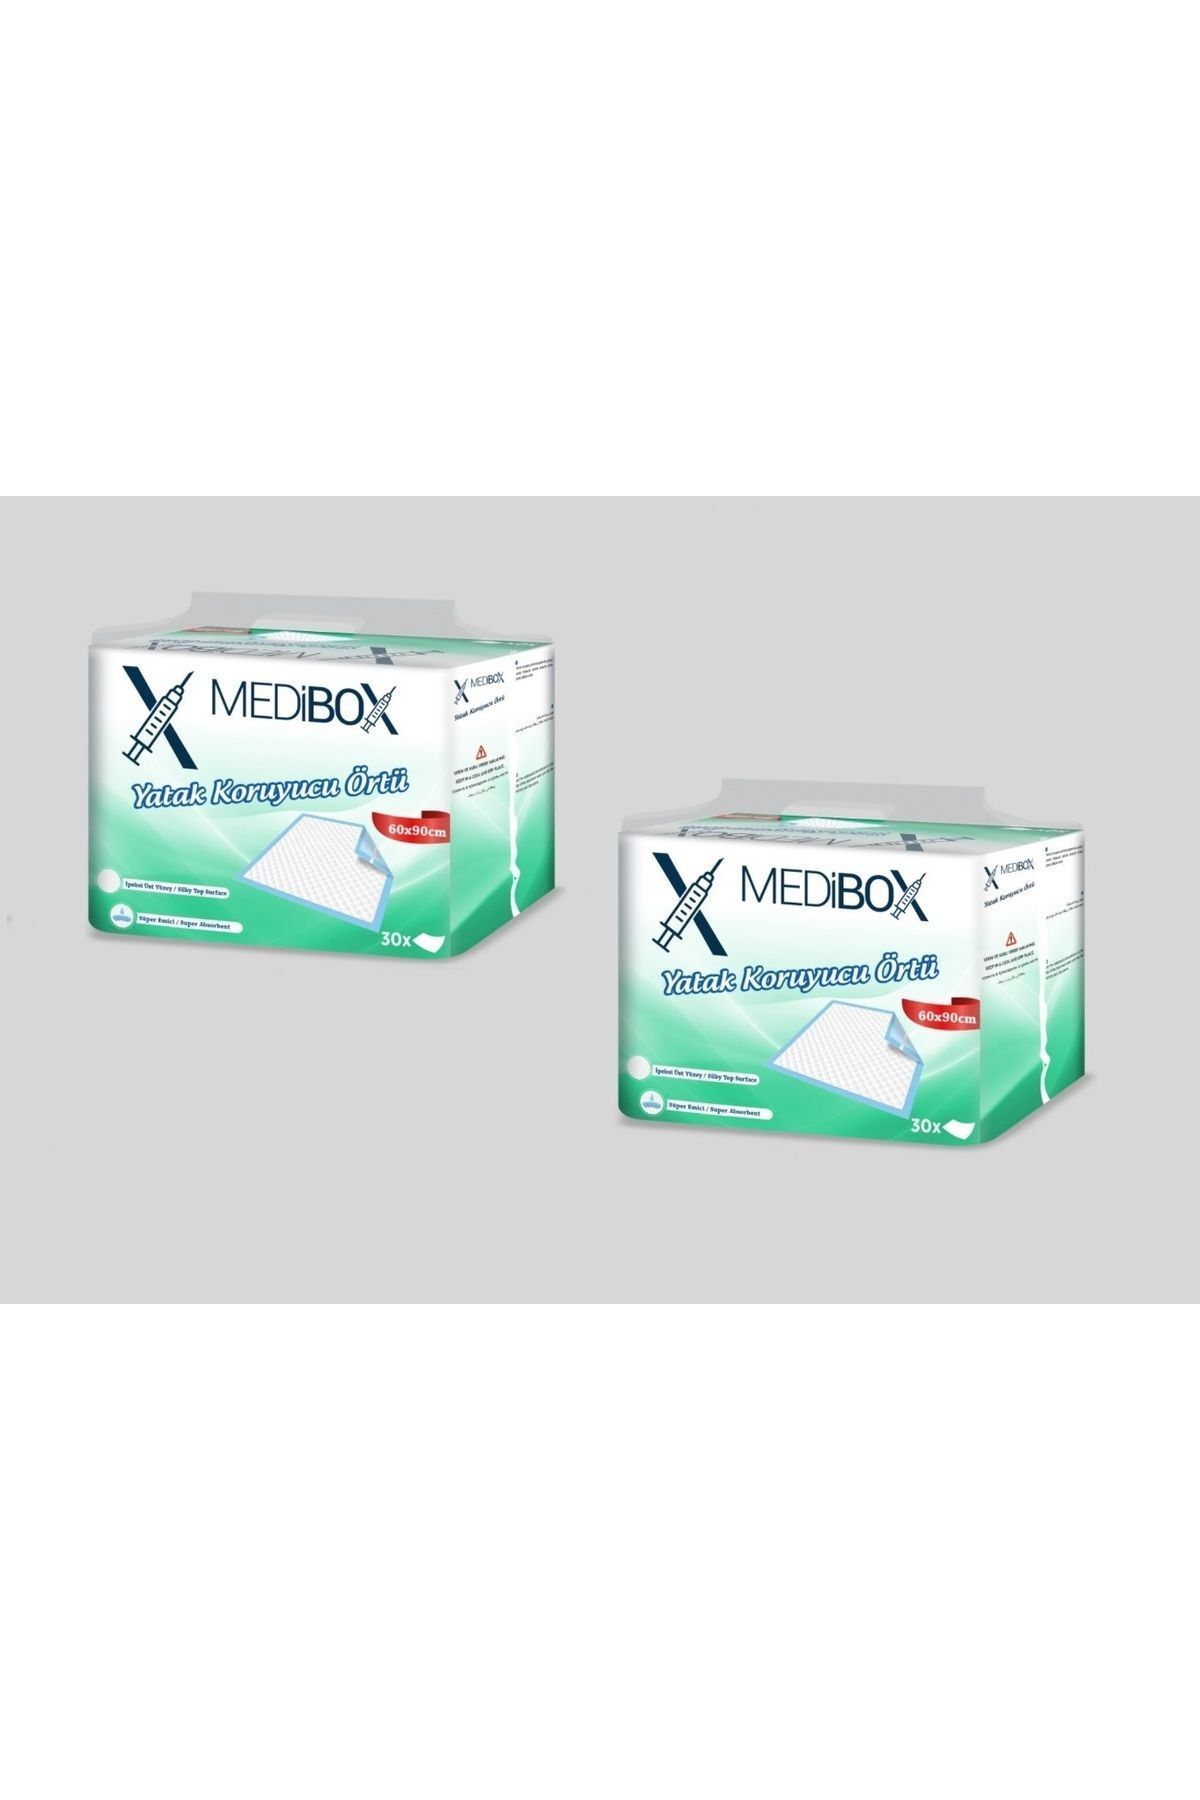 MEDİBOX Medibox Yatak Koruyucu Serme Bez 60cm x 90cm 30'lu Paket - 2 ADET